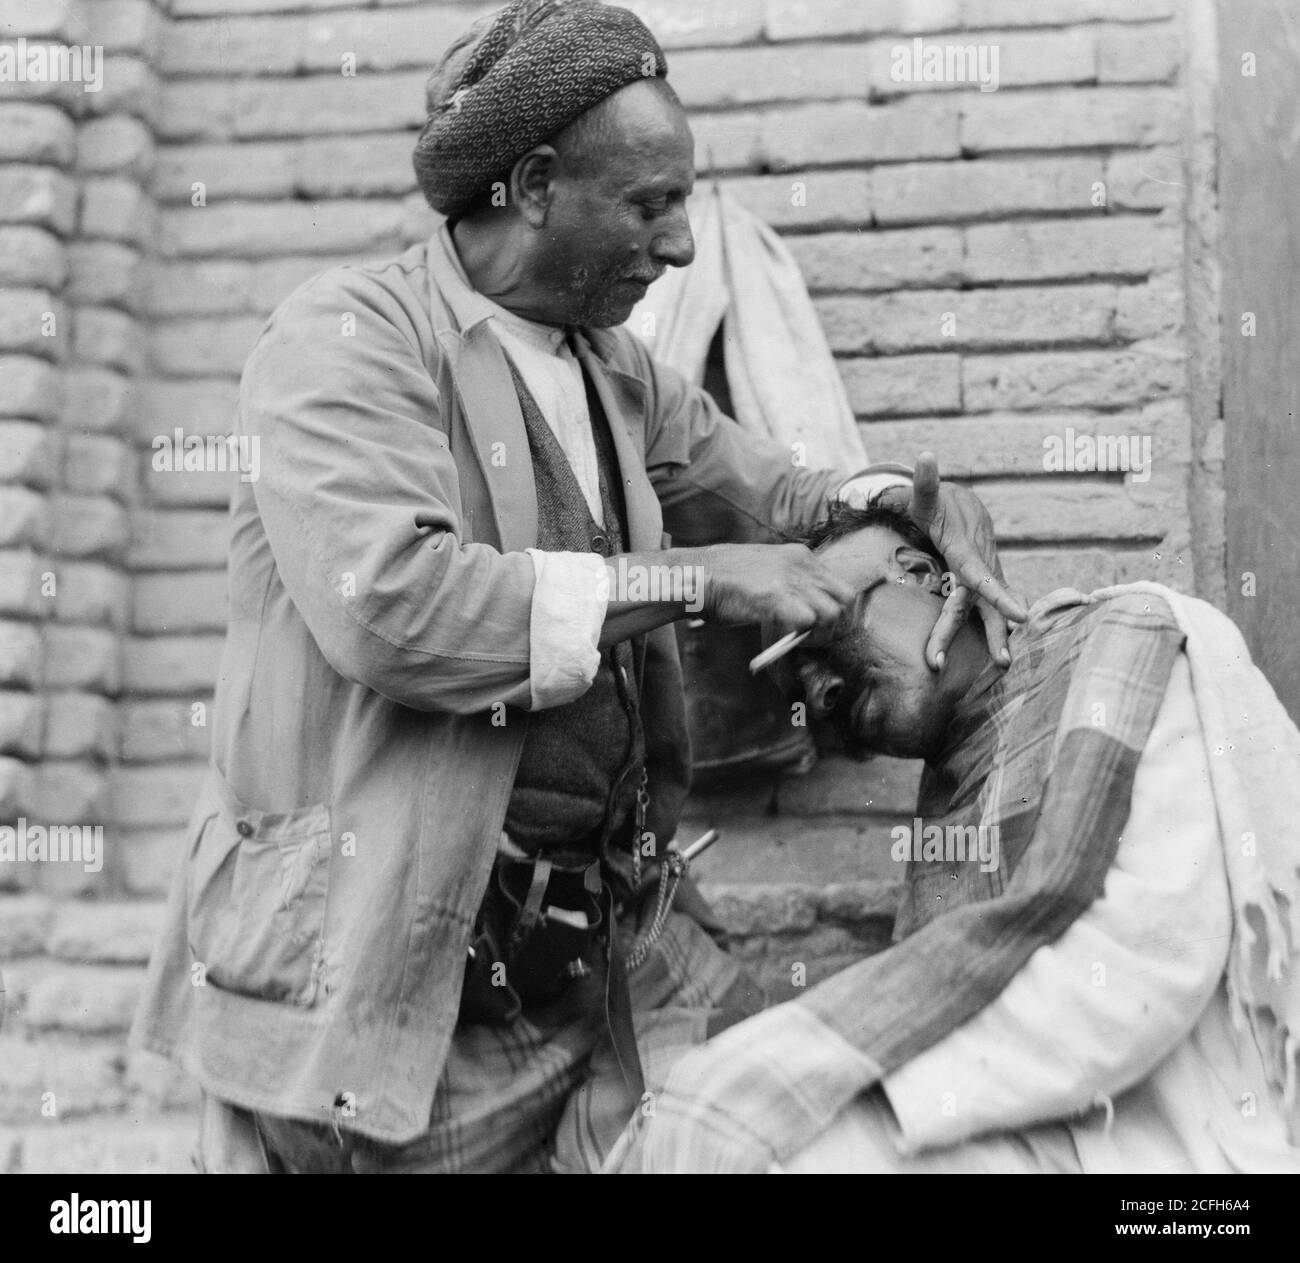 Originalunterschrift: Irak. (Mesopotamien). Bagdad. Ansicht von Straßenszenen und Typen. Straßenbarbier bei der Arbeit - Ort: Irak--Bagdad ca. 1932 Stockfoto